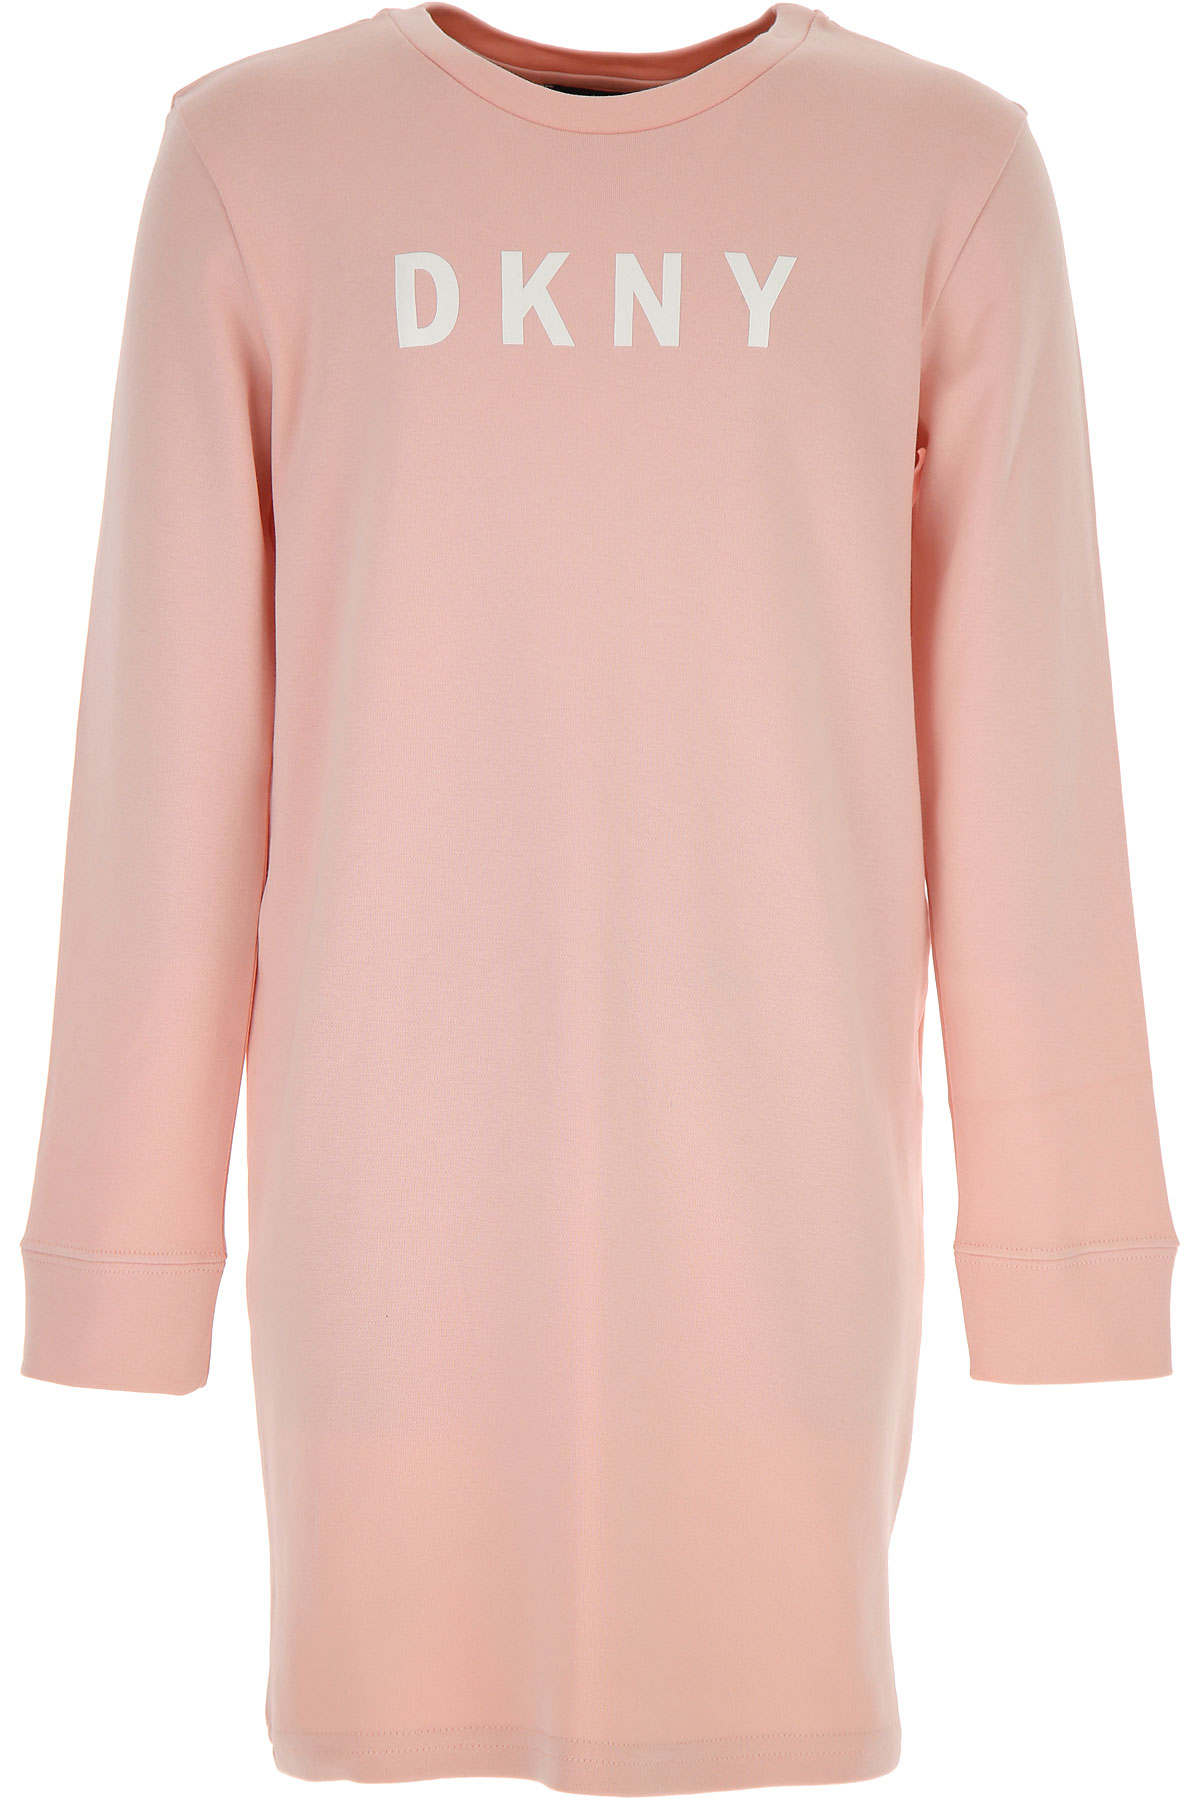 DKNY Kleid für Mädchen Günstig im Sale, Pink, Baumwolle, 2017, 10Y 12Y 14Y 16Y 6Y 8Y